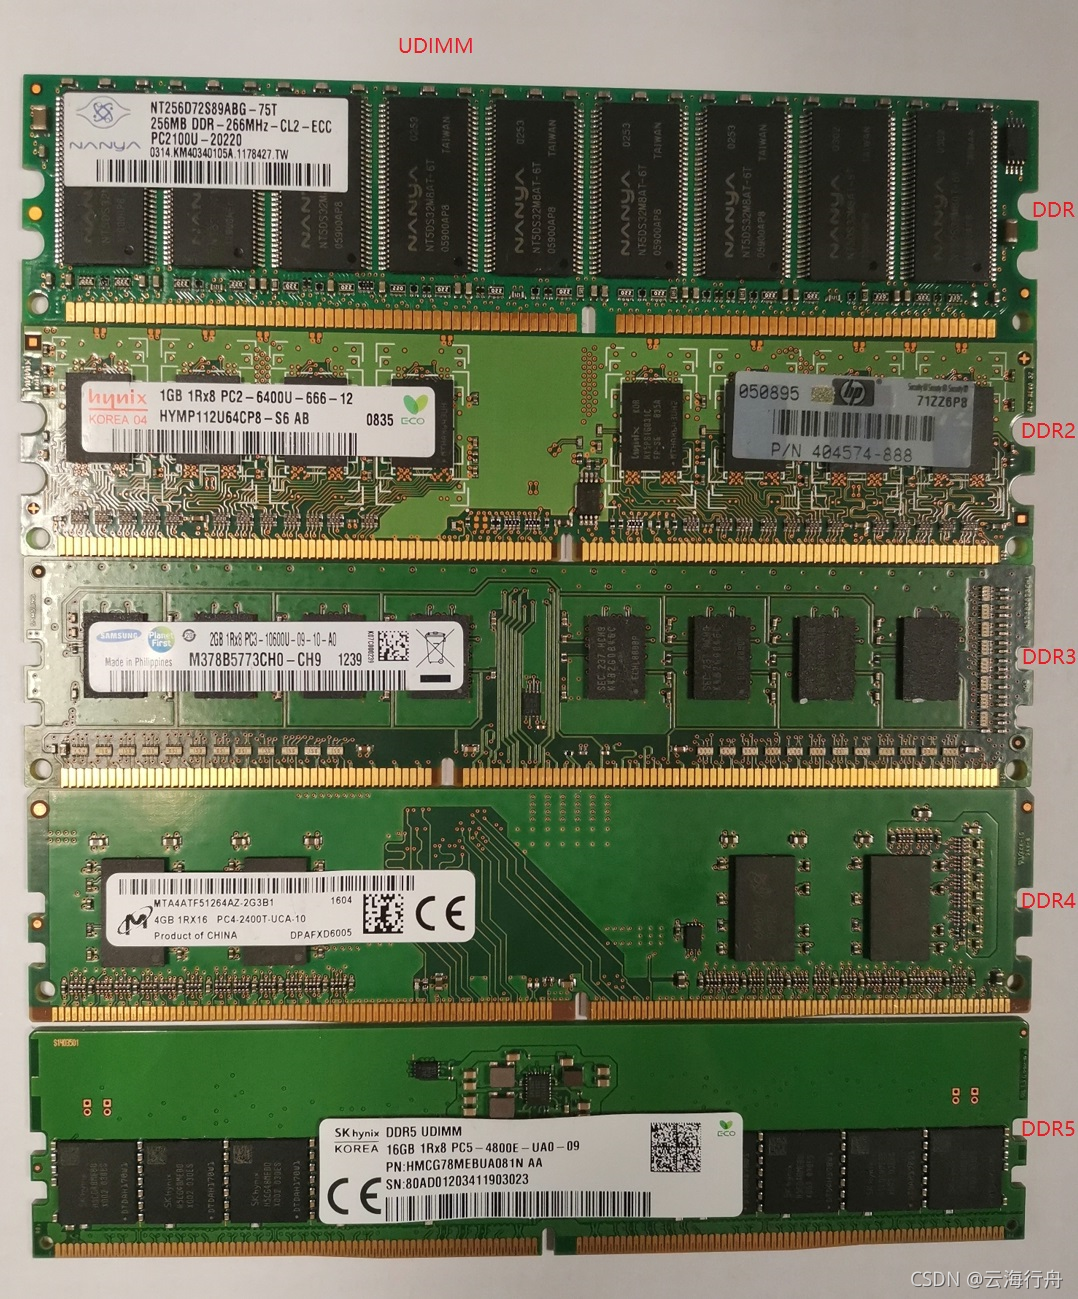 DDR3L 内存是什么？如何排查电脑是否搭载？  第1张